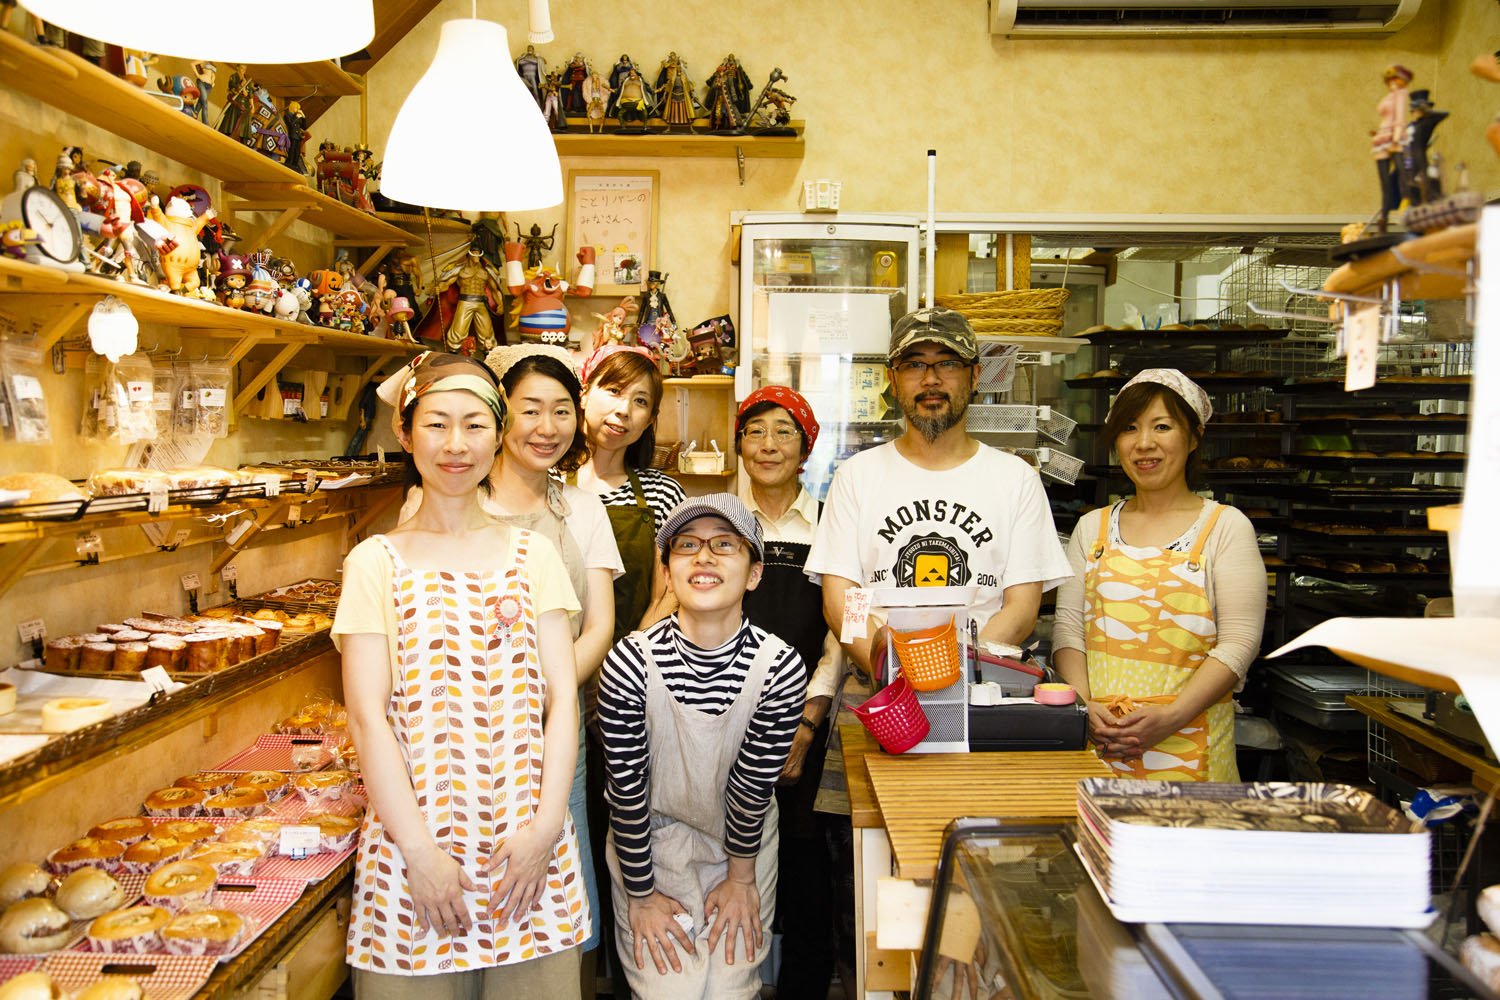 大川さん手づくりの棚には、趣味のフィギュアも。BGMはサザエさん♪「その日によってパンの種類が違います」。